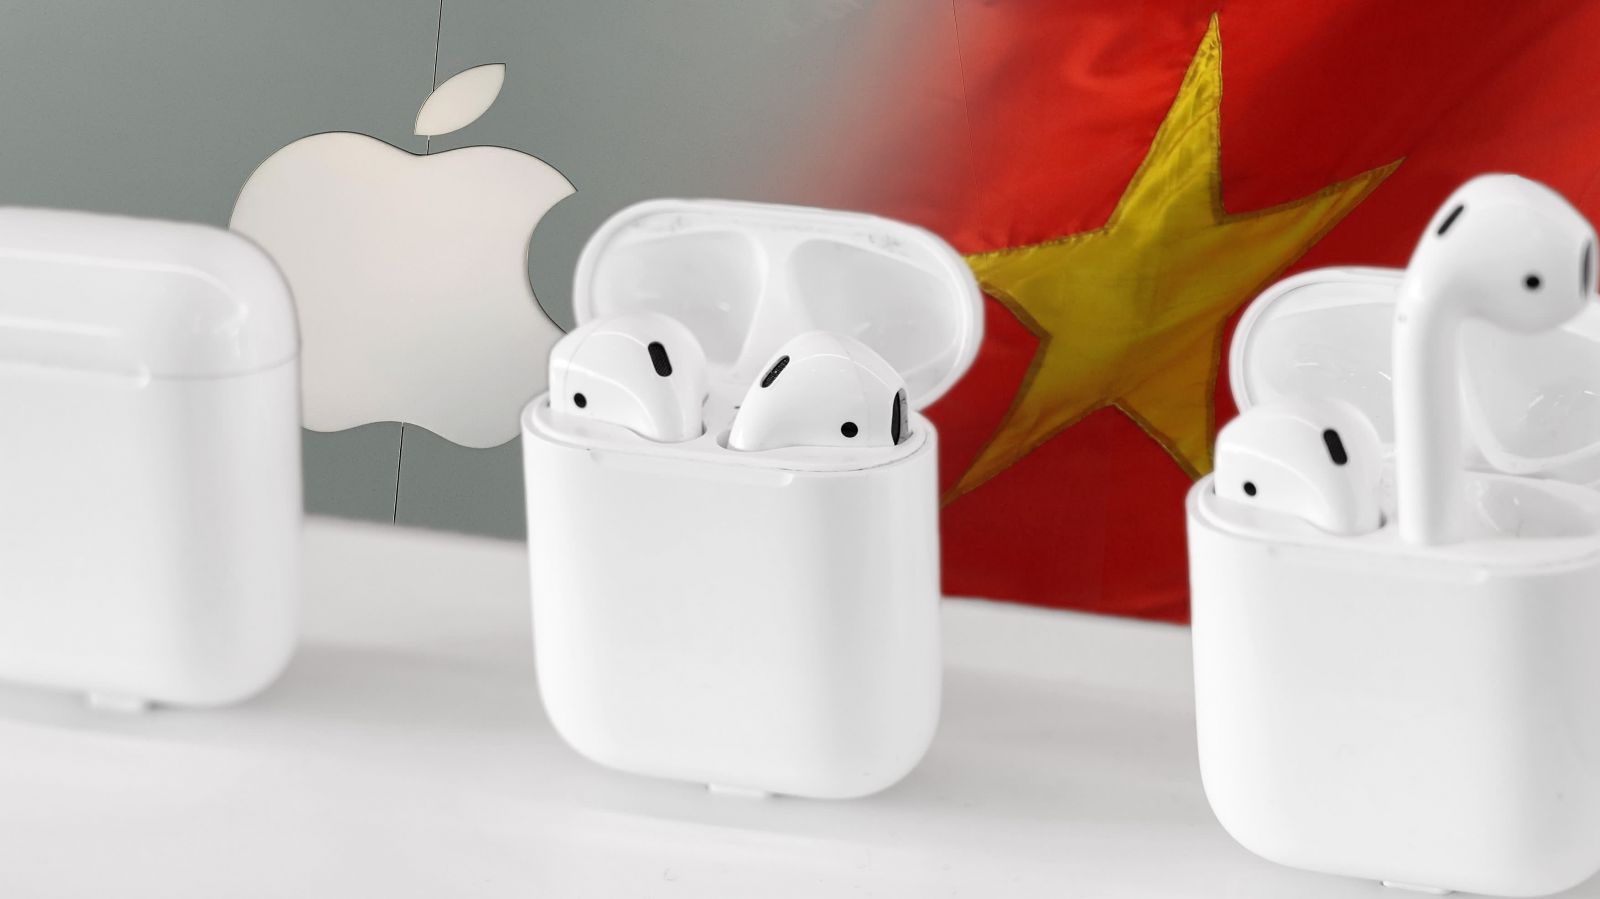 Apple đang sản xuất hàng loạt AirPods tại Việt Nam trong thời gian đầu